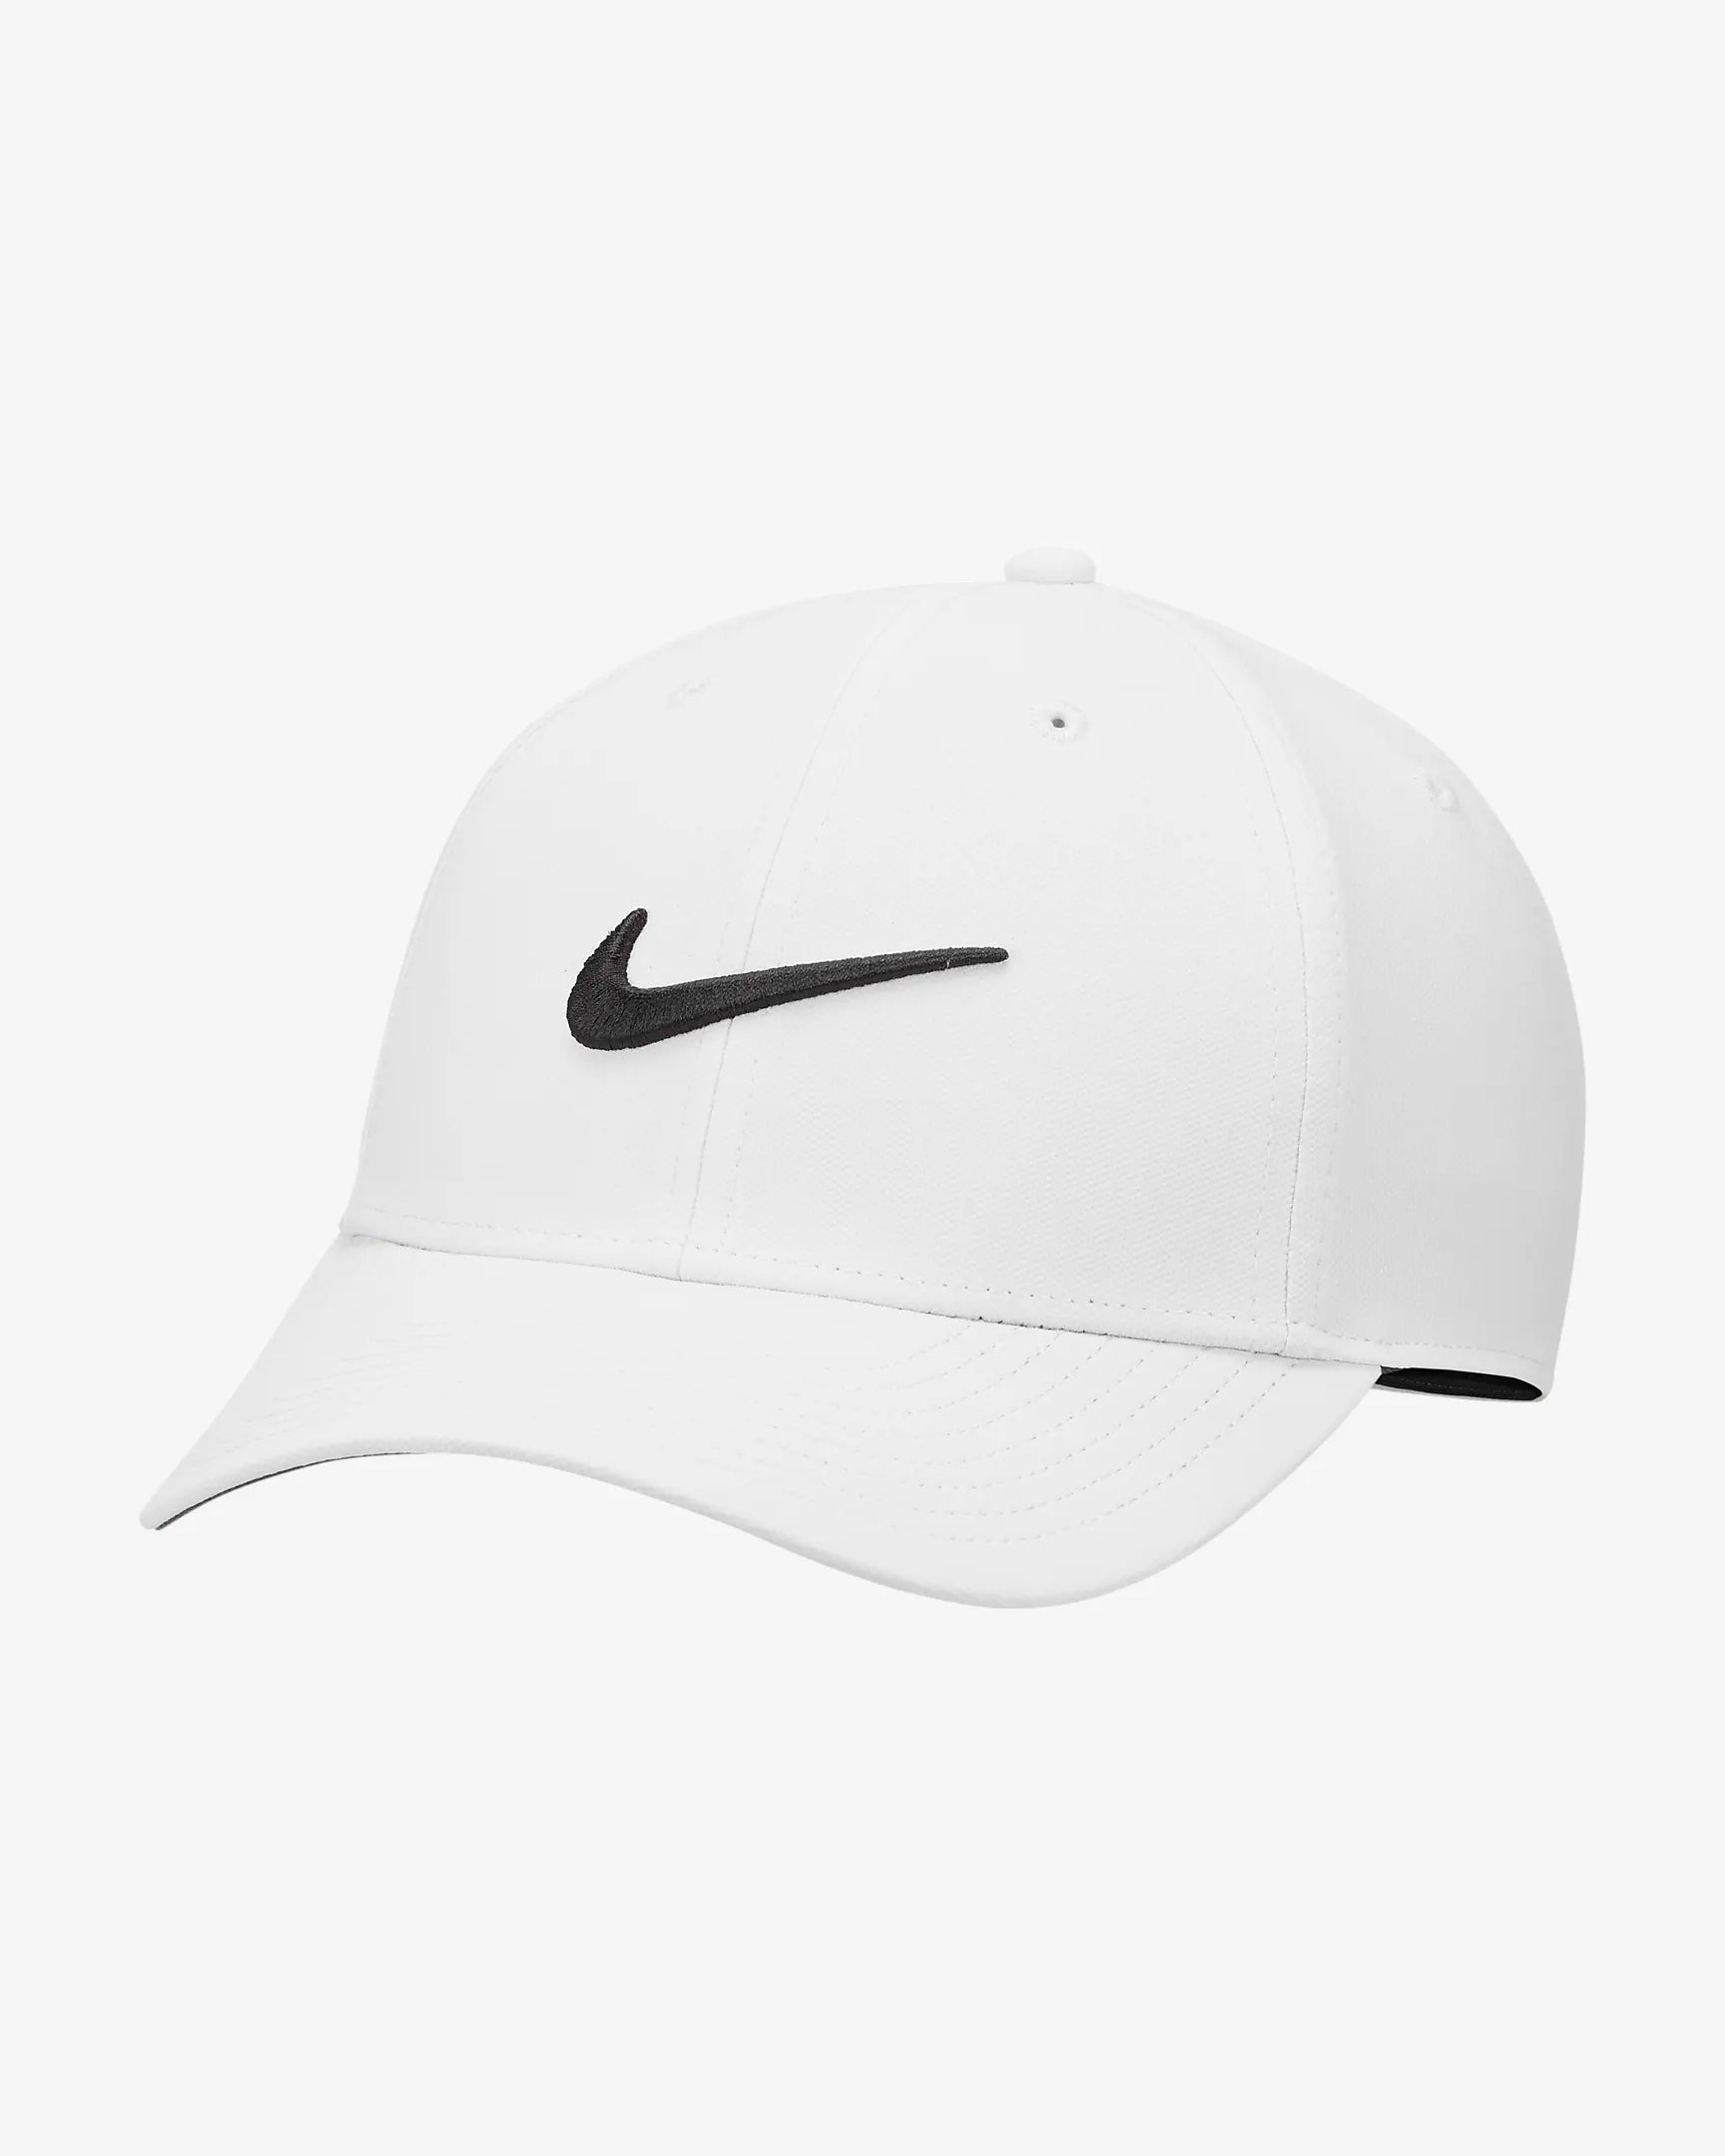 Nike Club Cap - Grey/Black